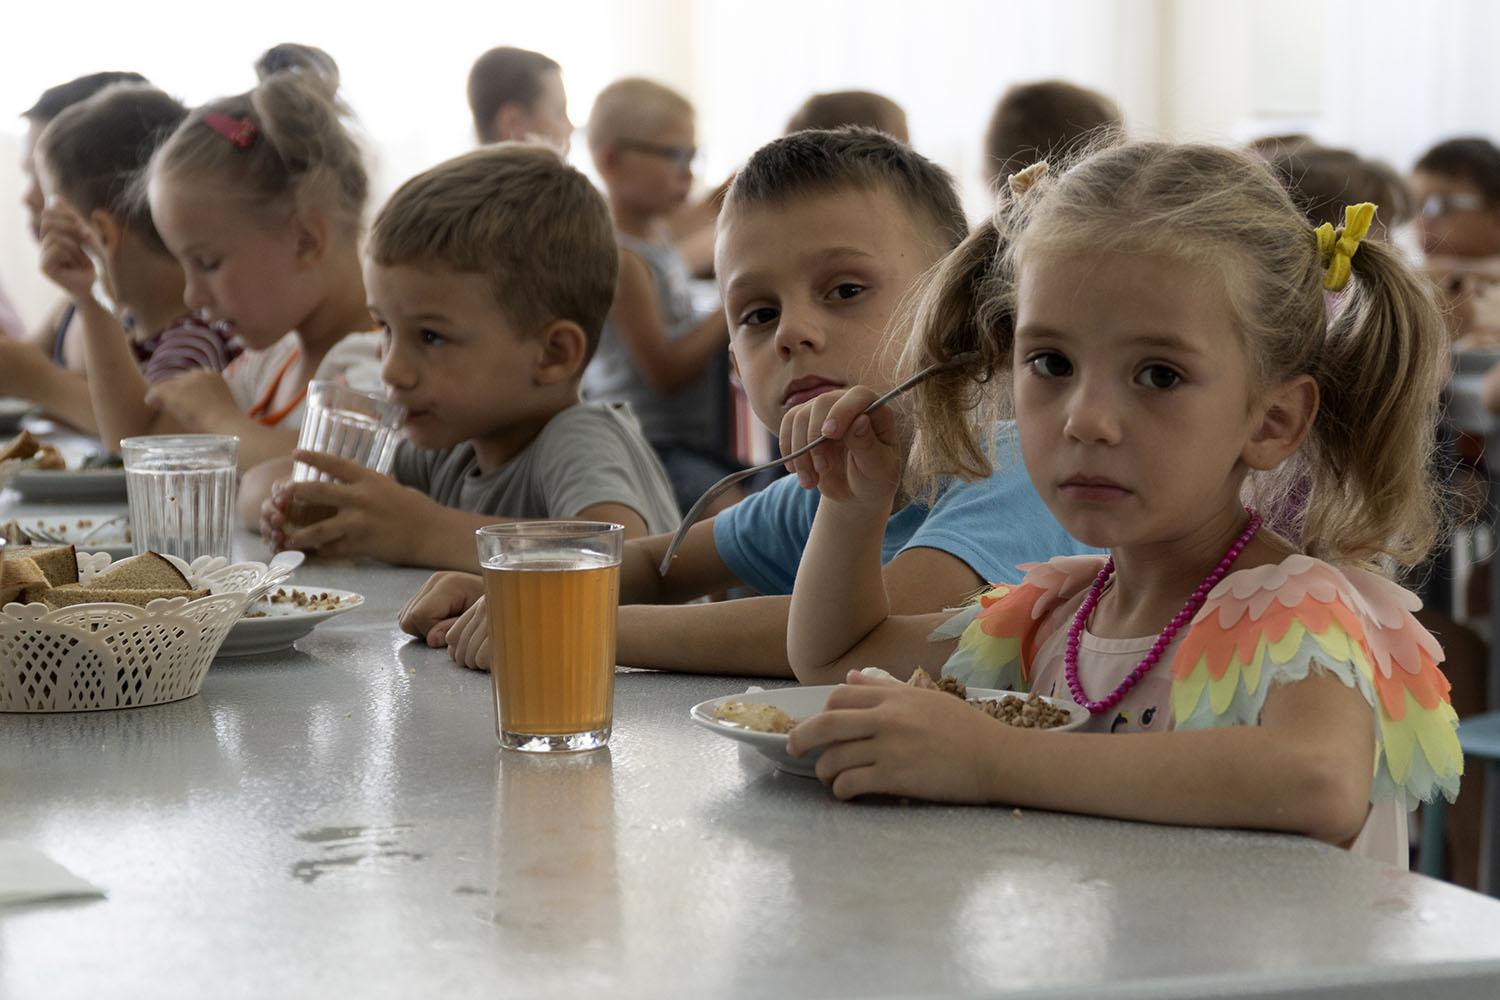 Ukrainian kids in Russia